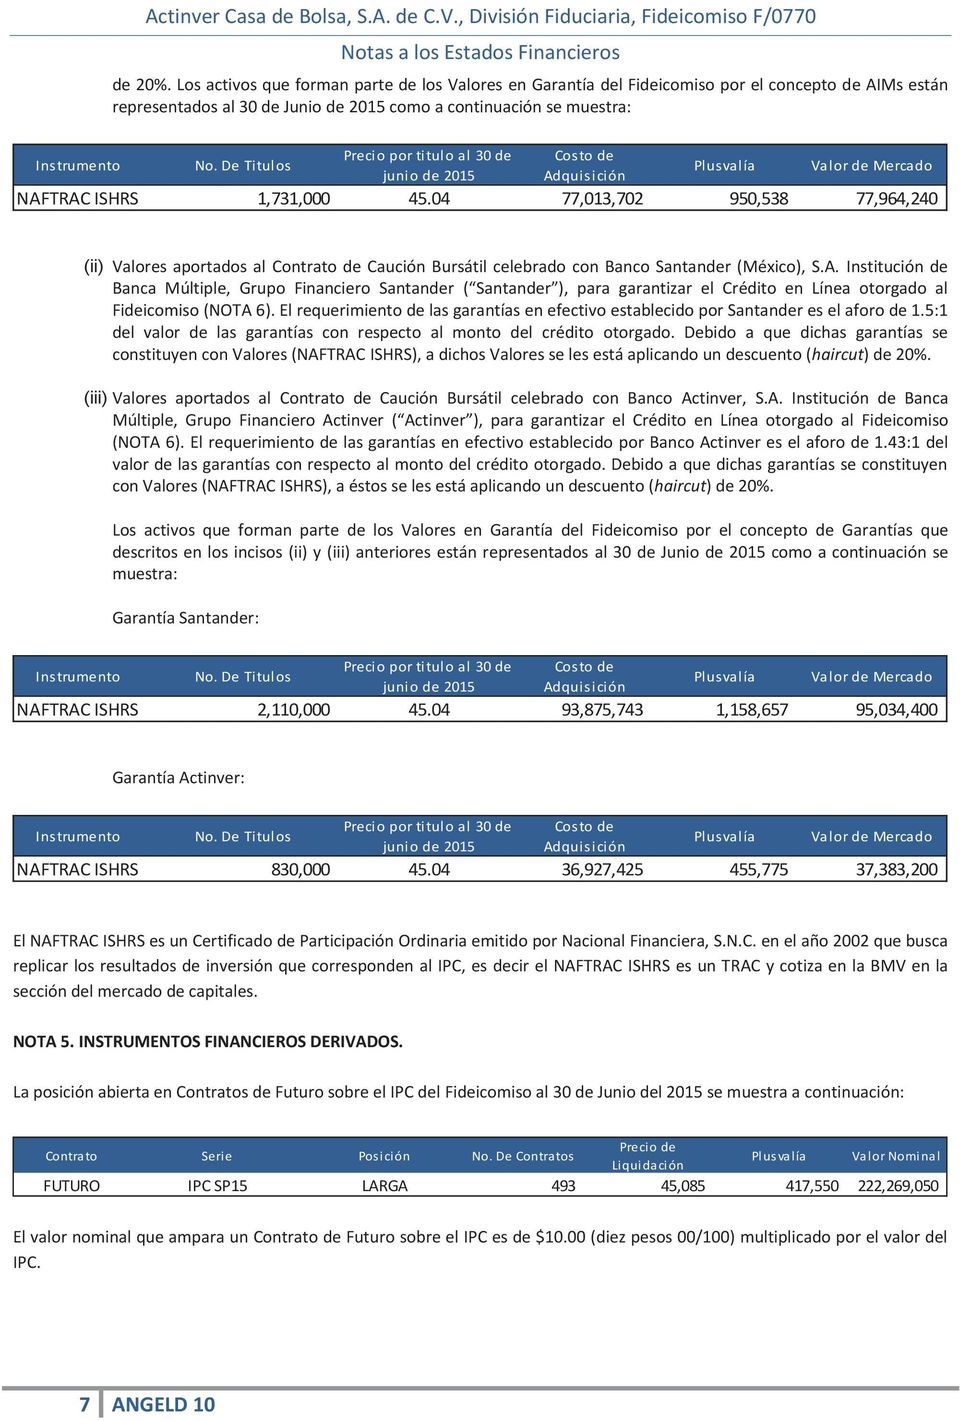 Costo de Instrumento No. De Titulos Plusvalía Valor de Mercado junio de 2015 Adquisición NAFTRAC ISHRS 1,731,000 45.